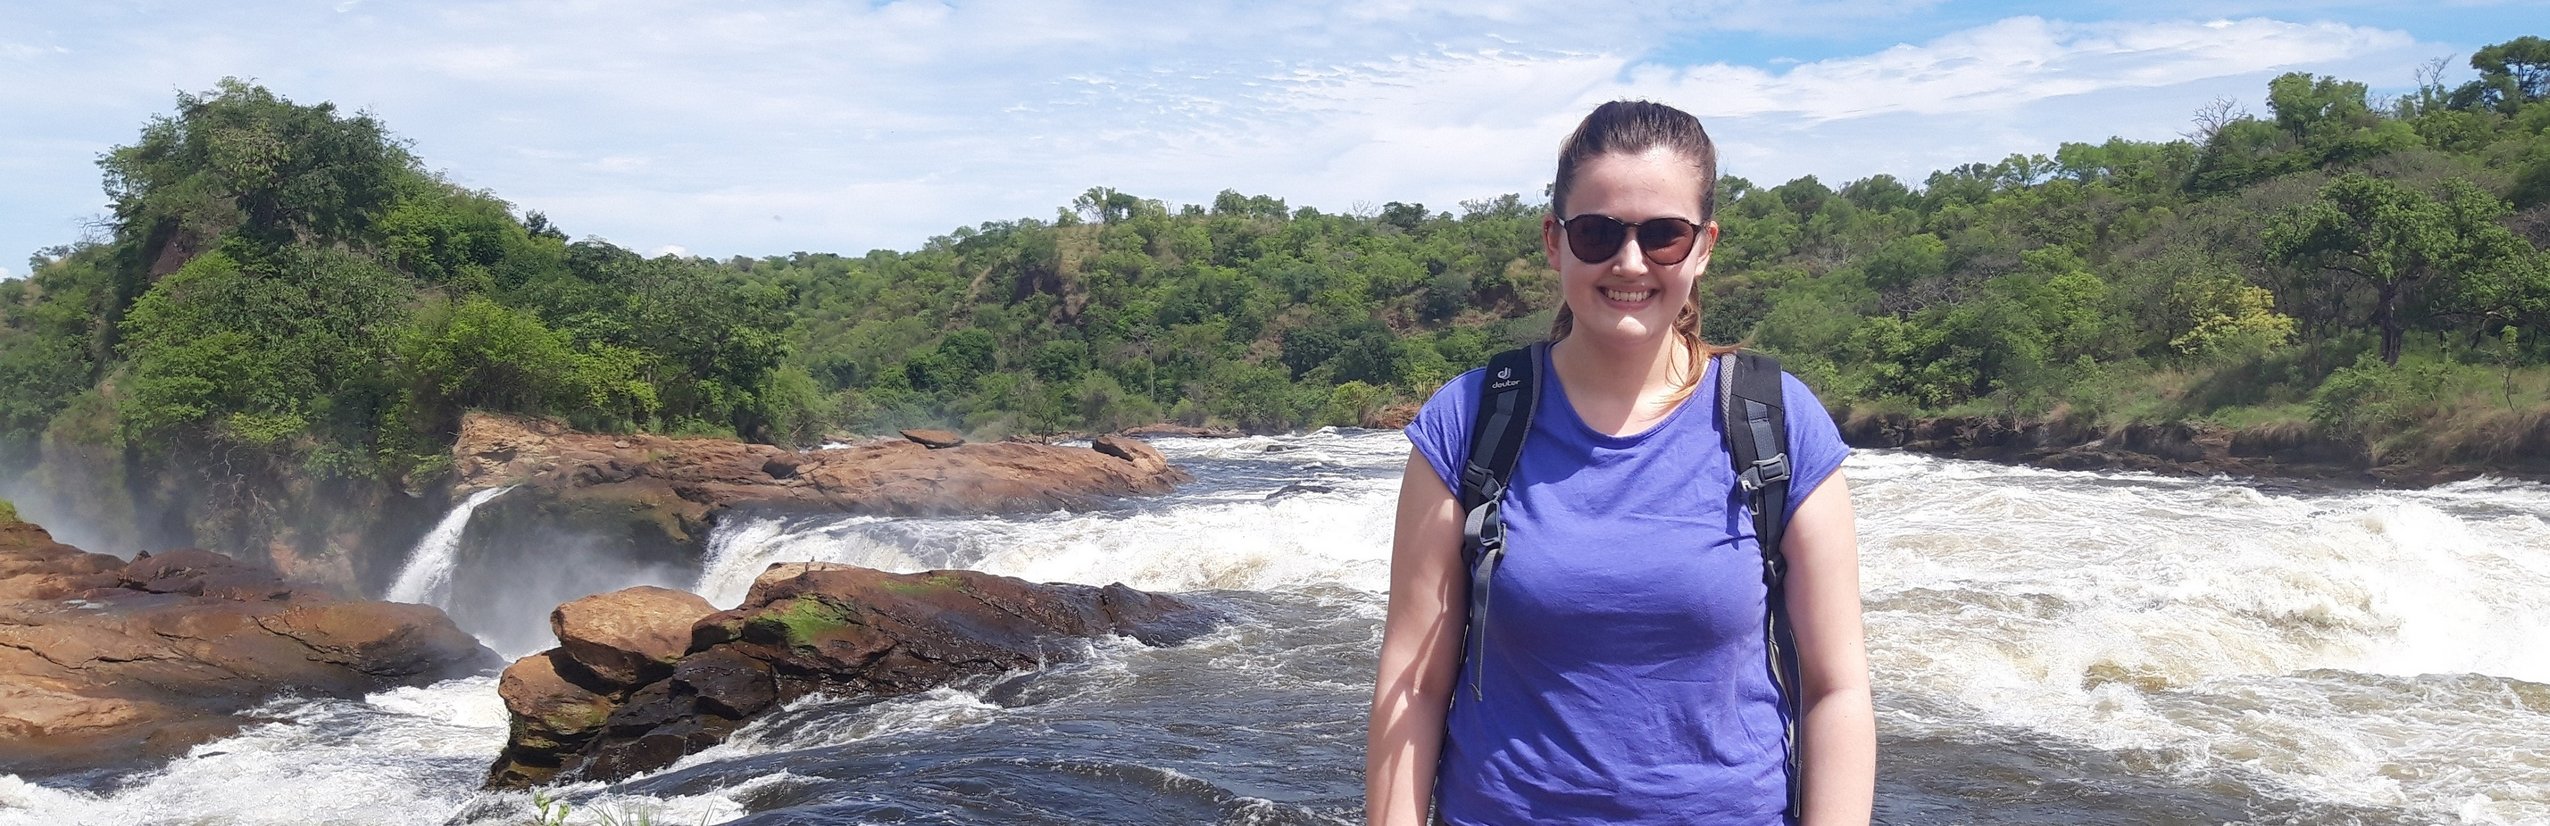 Svenja in Uganda - Familienreise nach Uganda